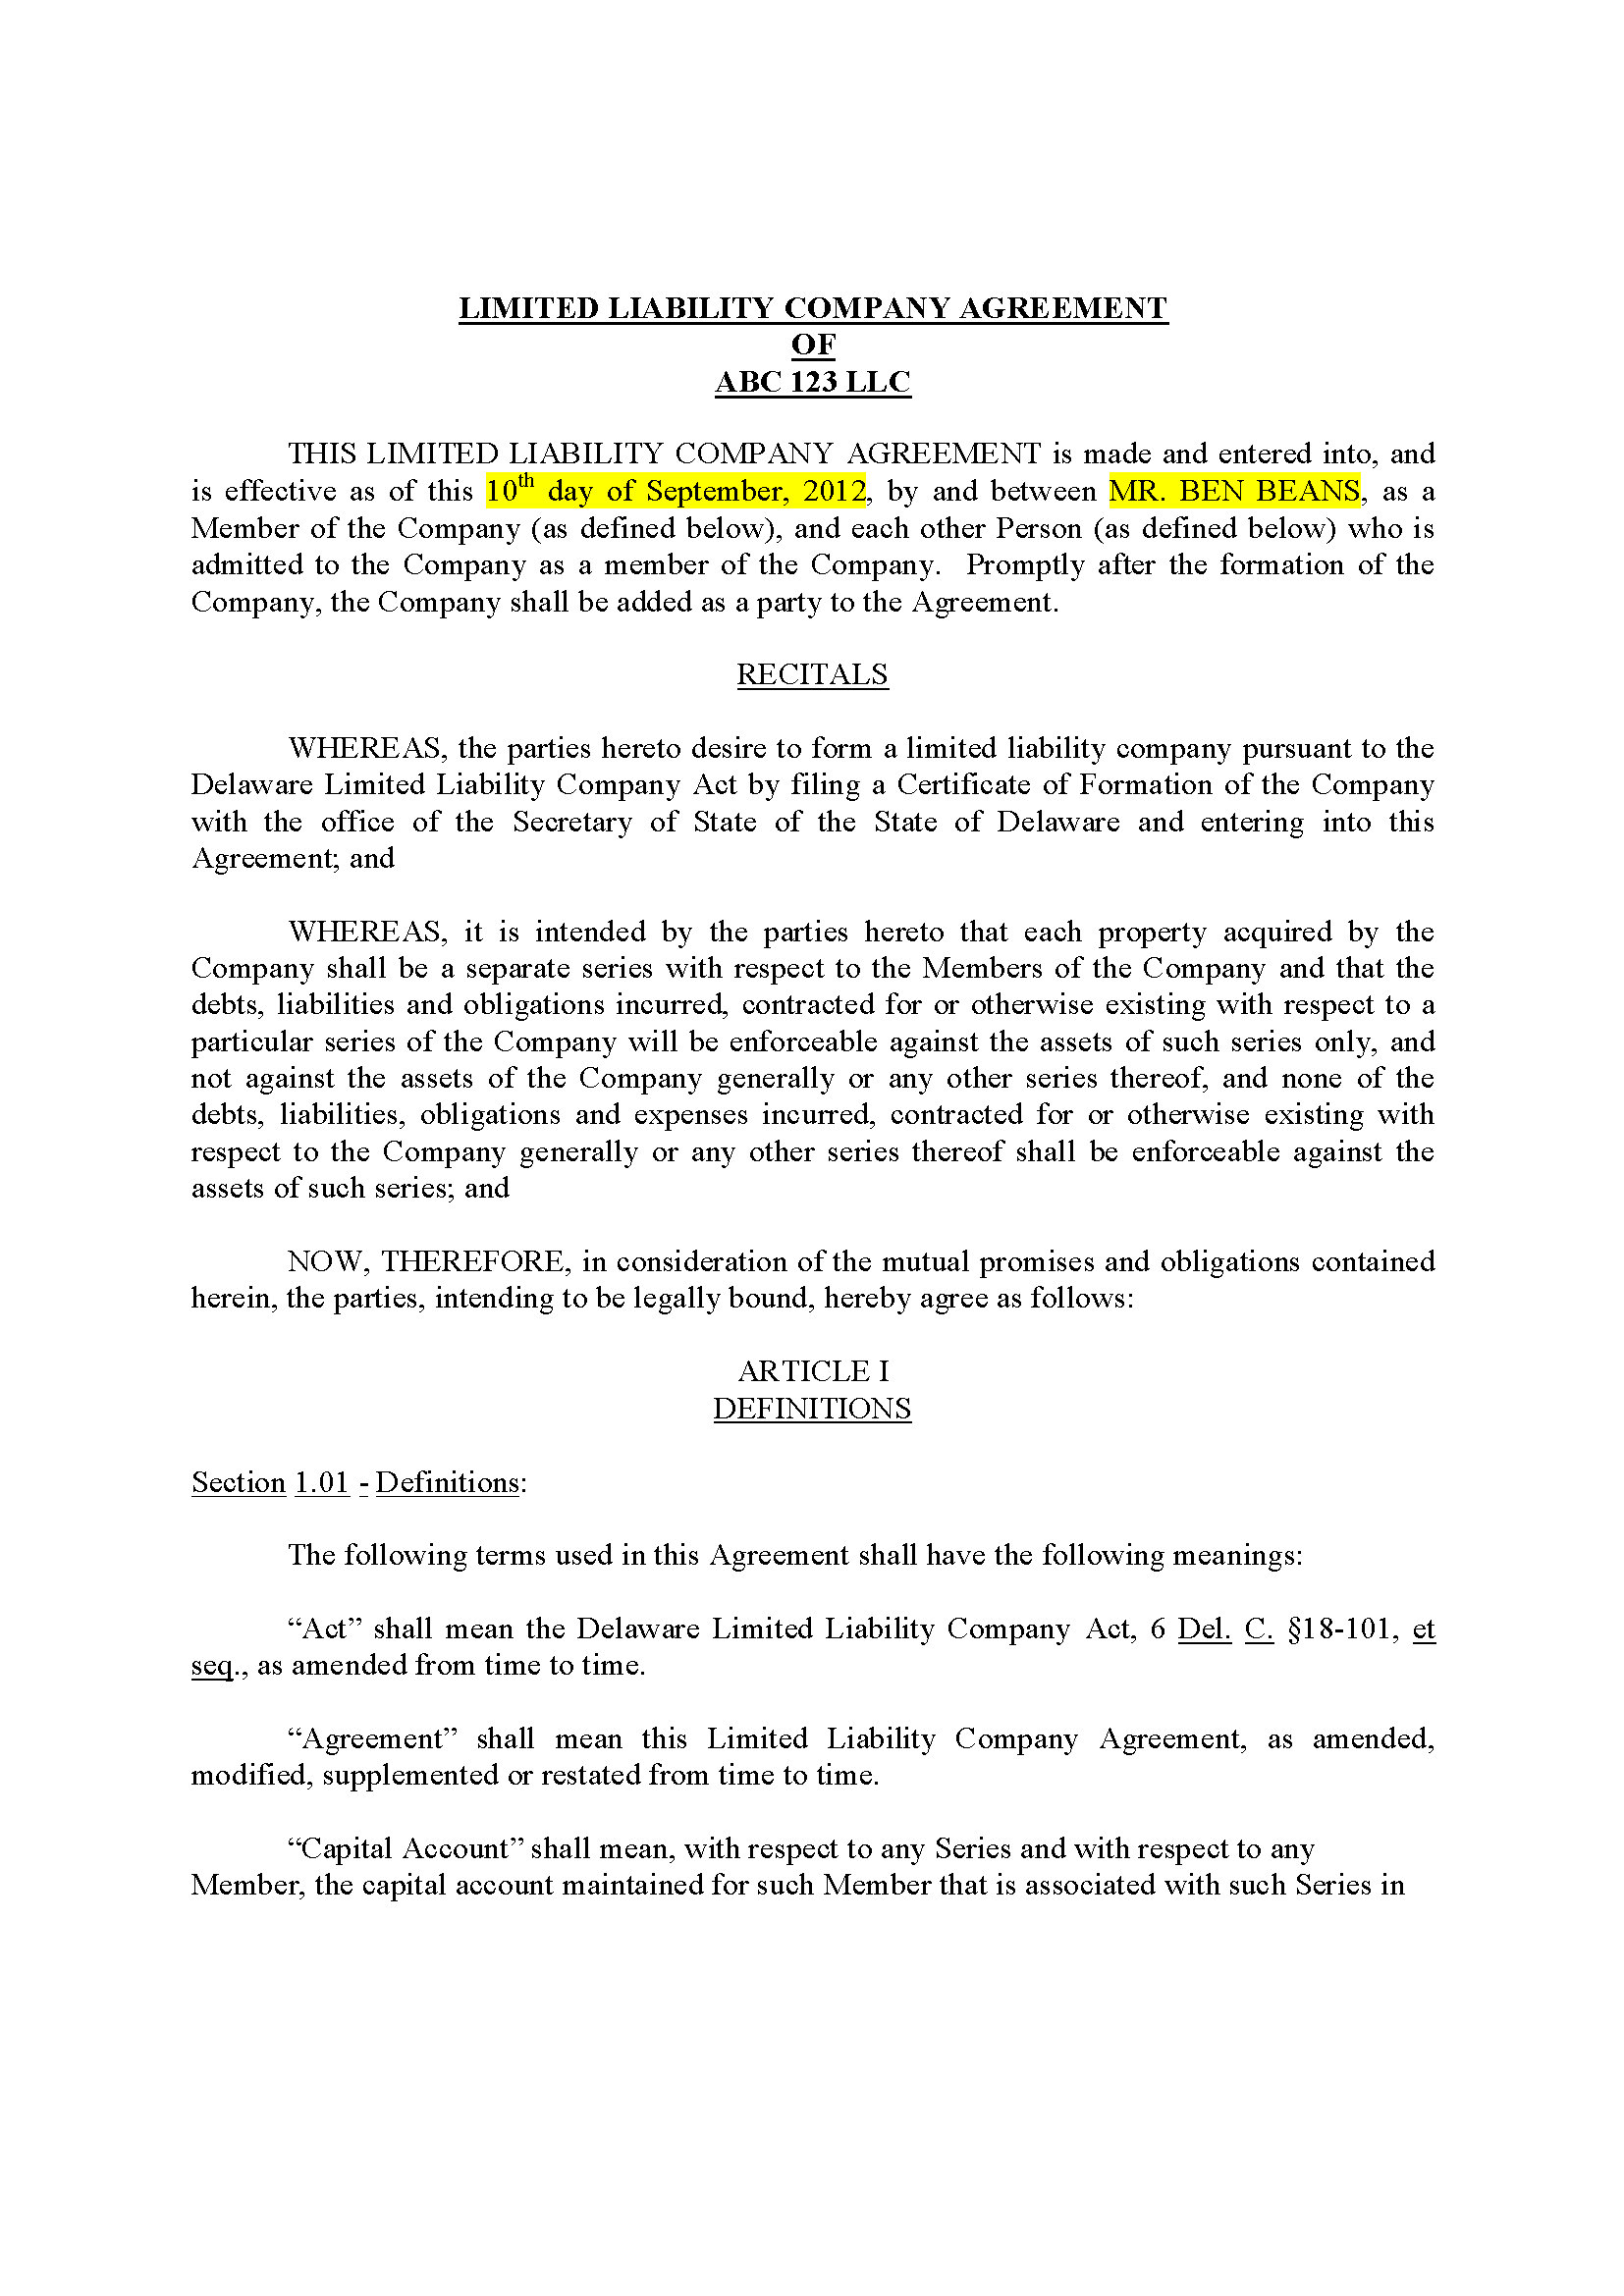 Michigan LLC Operating Agreement (17 pg)Private Placement Memorandum